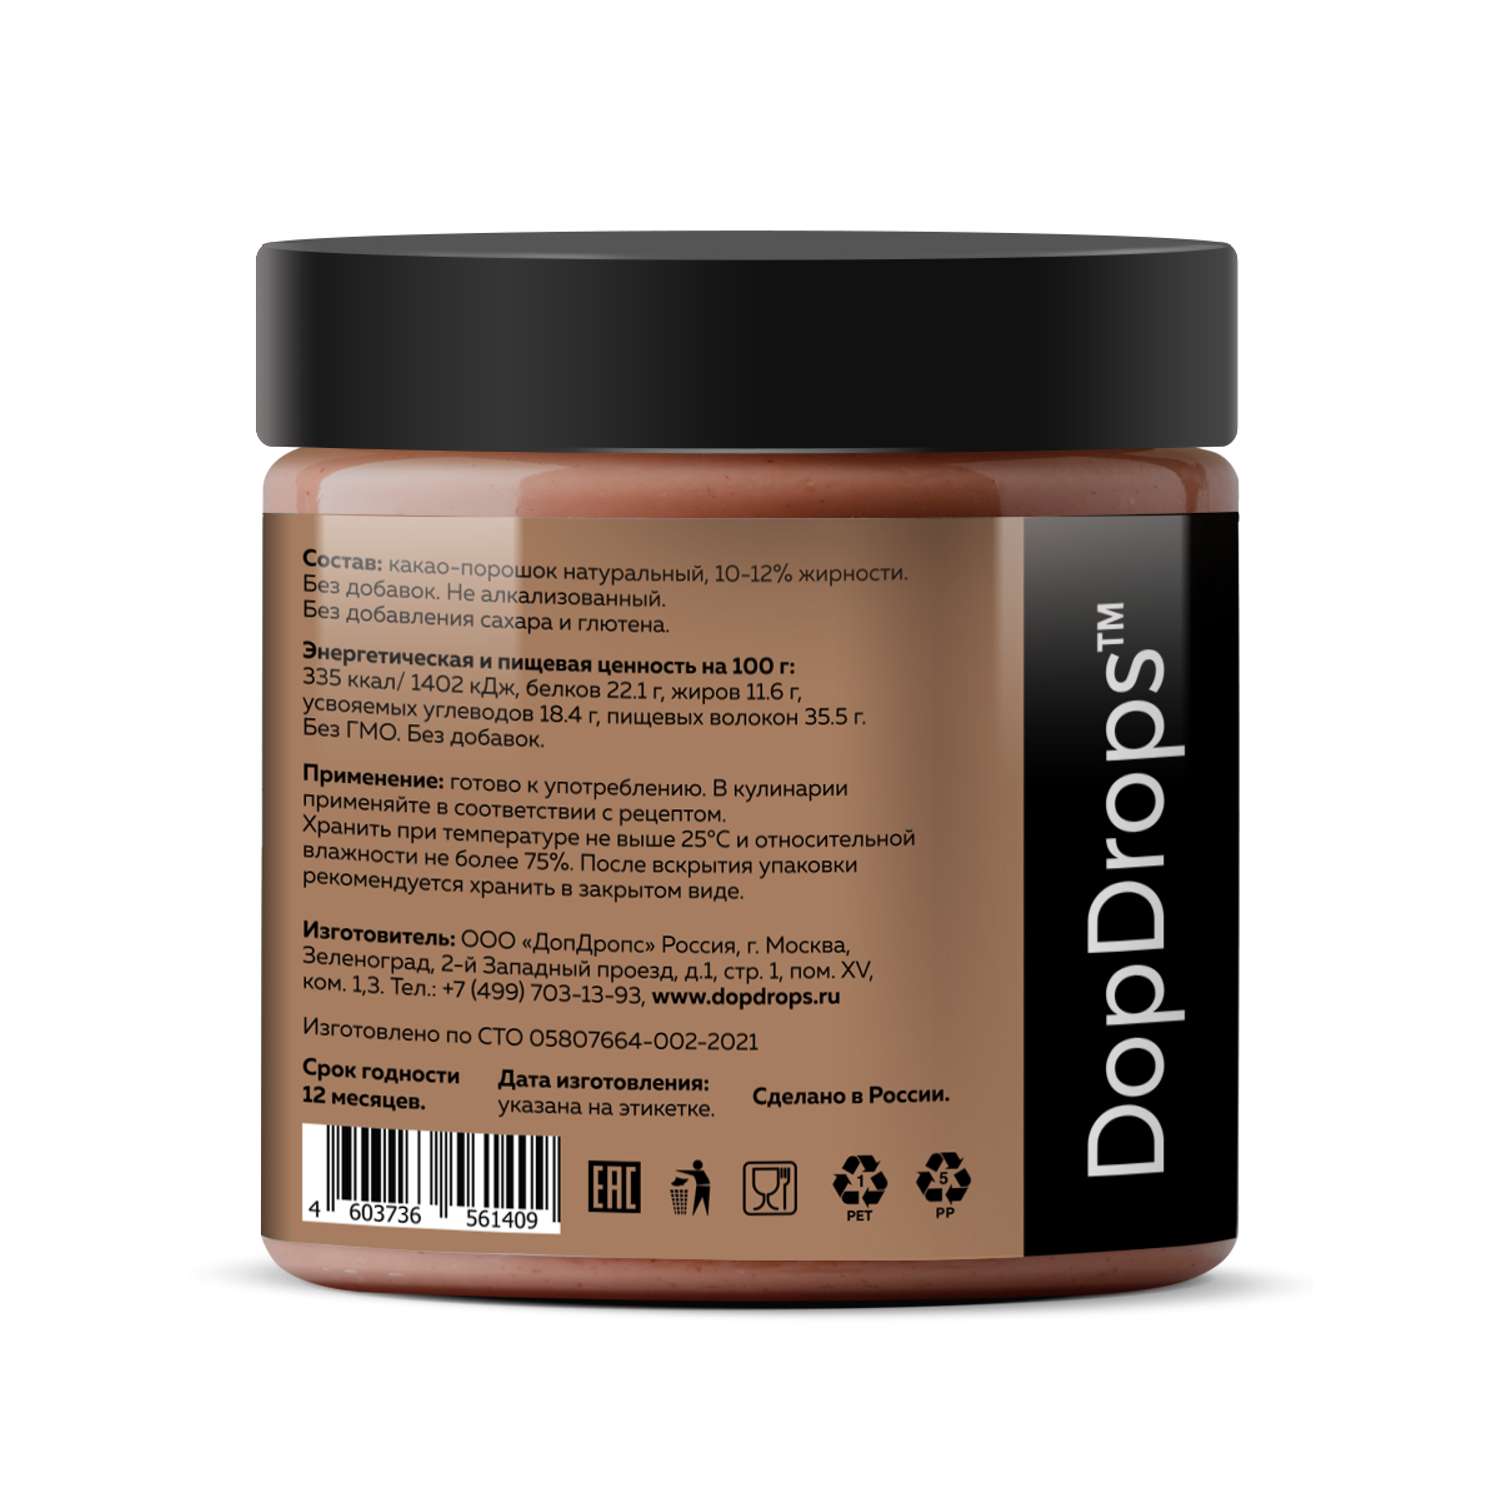 Какао-порошок DopDrops натуральный с пониженной жирностью 10-12% без добавок 200г - фото 2